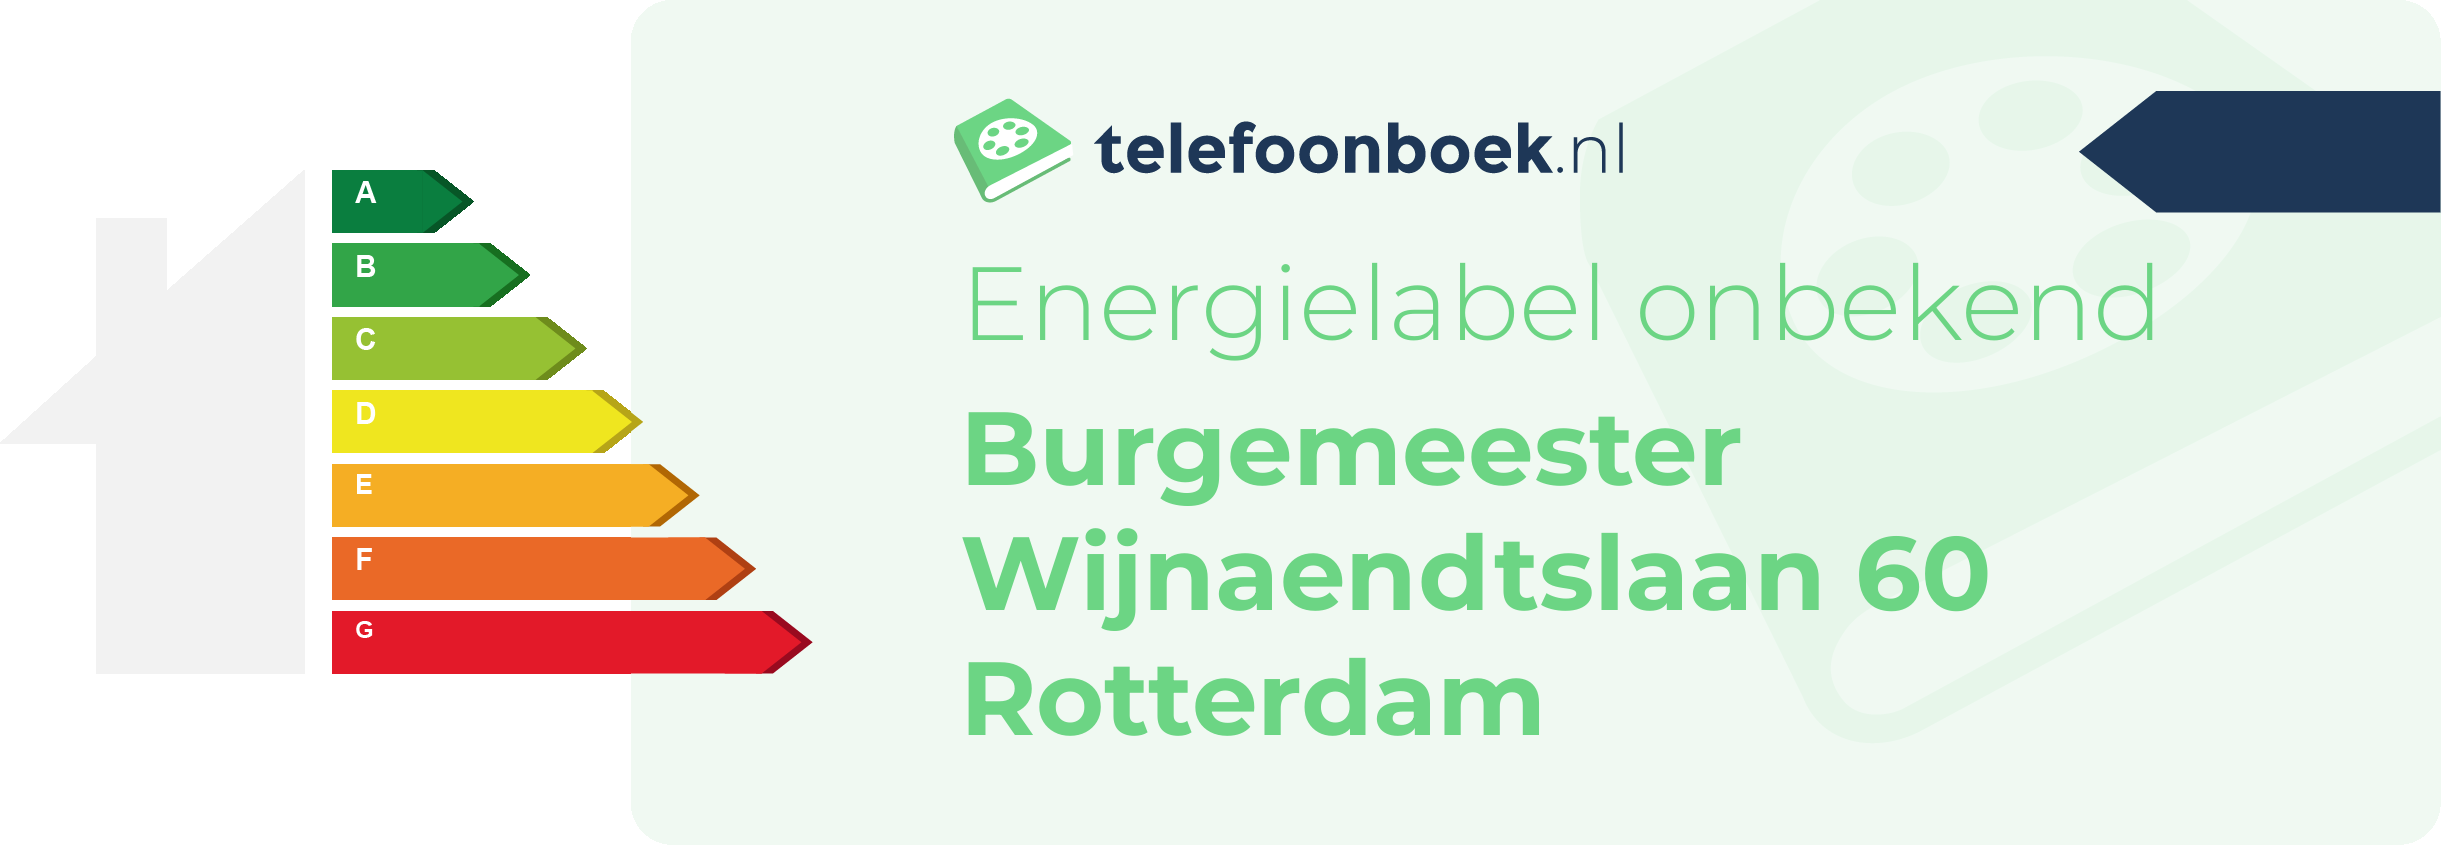 Energielabel Burgemeester Wijnaendtslaan 60 Rotterdam